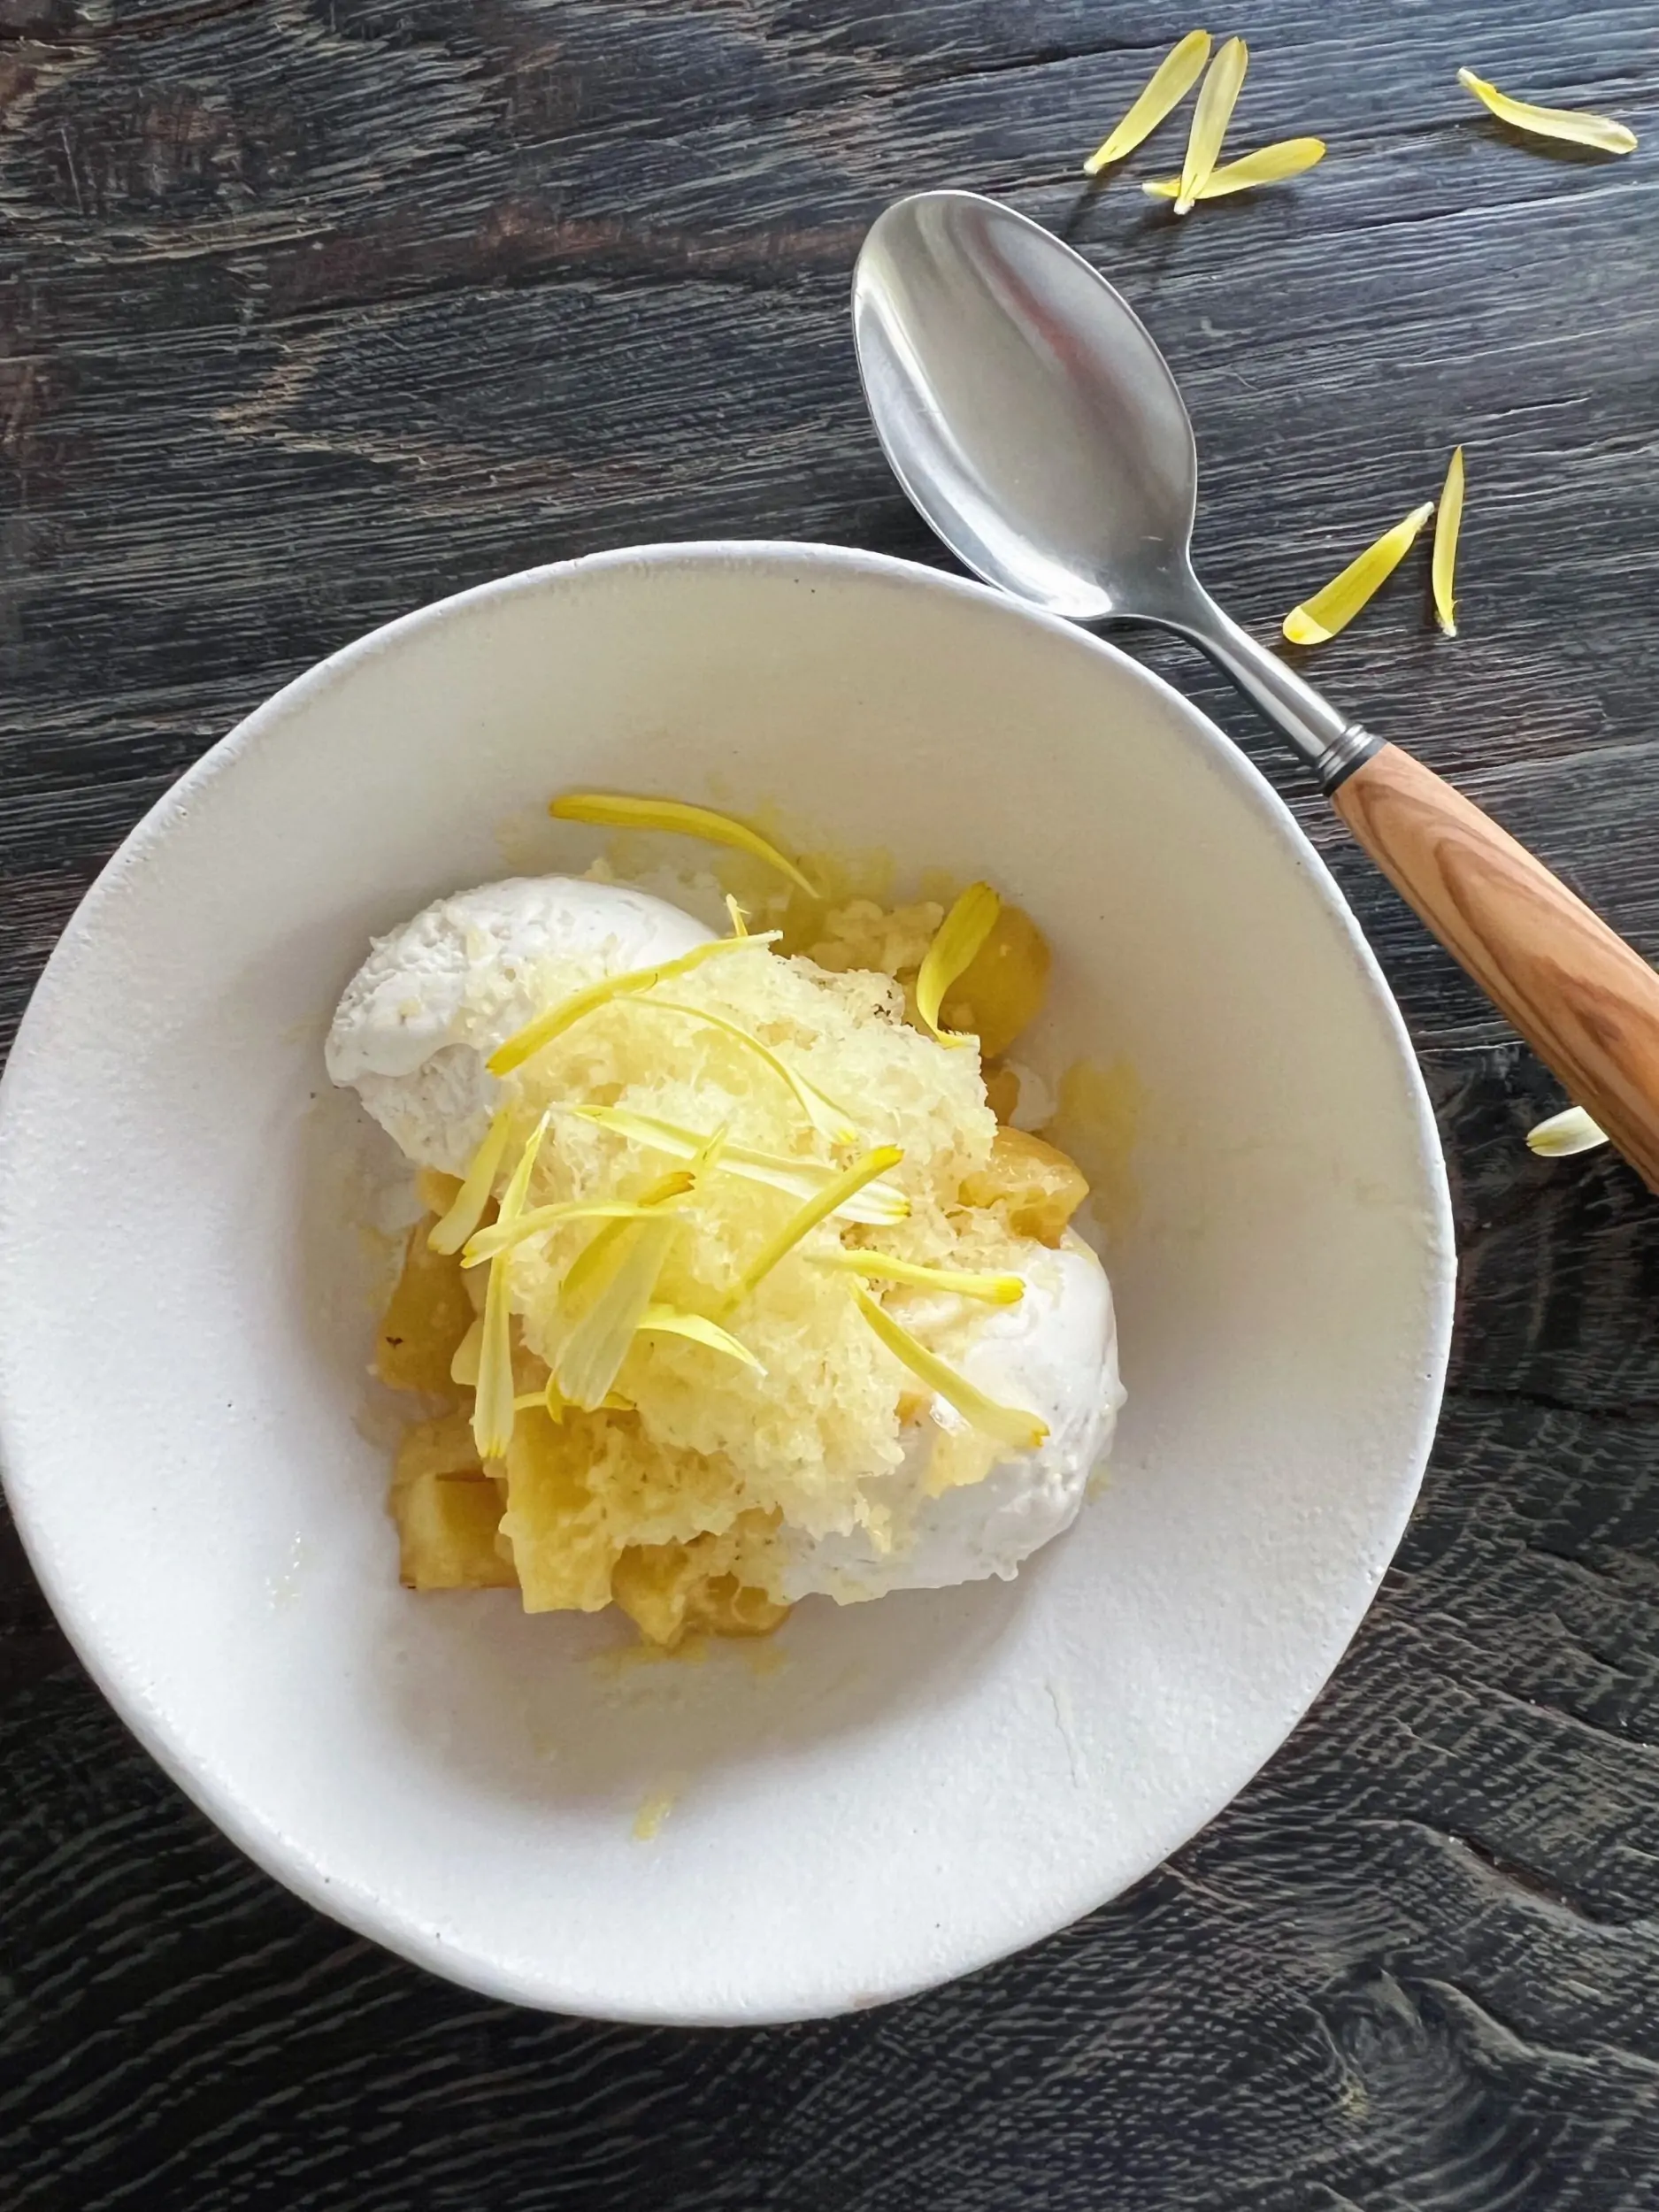 dessert med ananas og is pyntet med gule kronblad fra blomst i hvid skål sat på sort rustikt træbord hvor der også ligger en dessertske med skaft af oliventræ